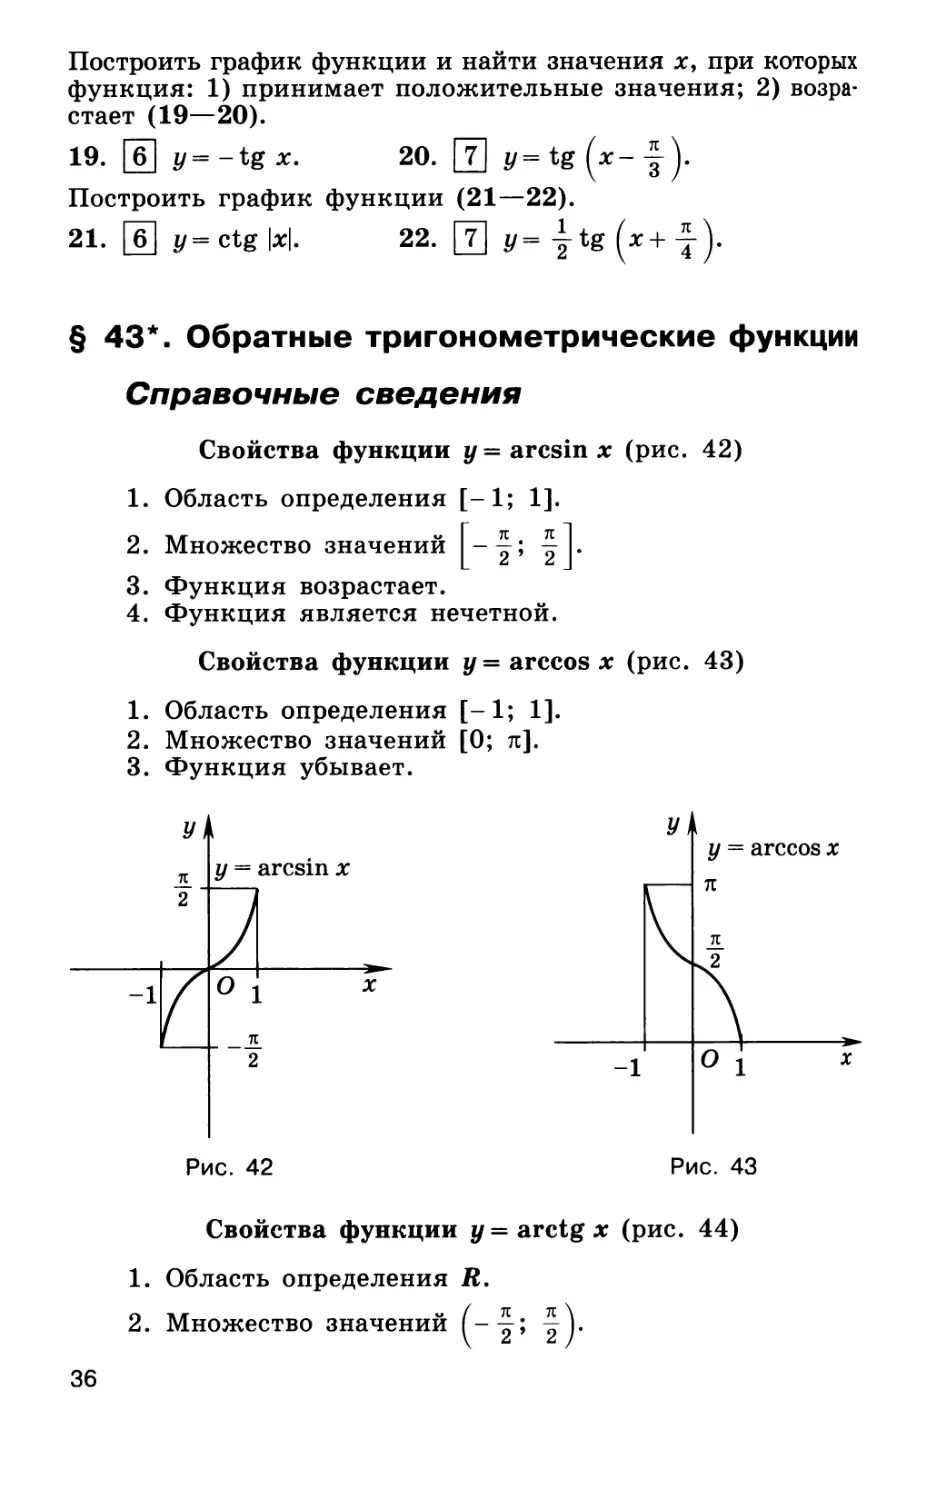 § 43. Обратные тригонометрические функции